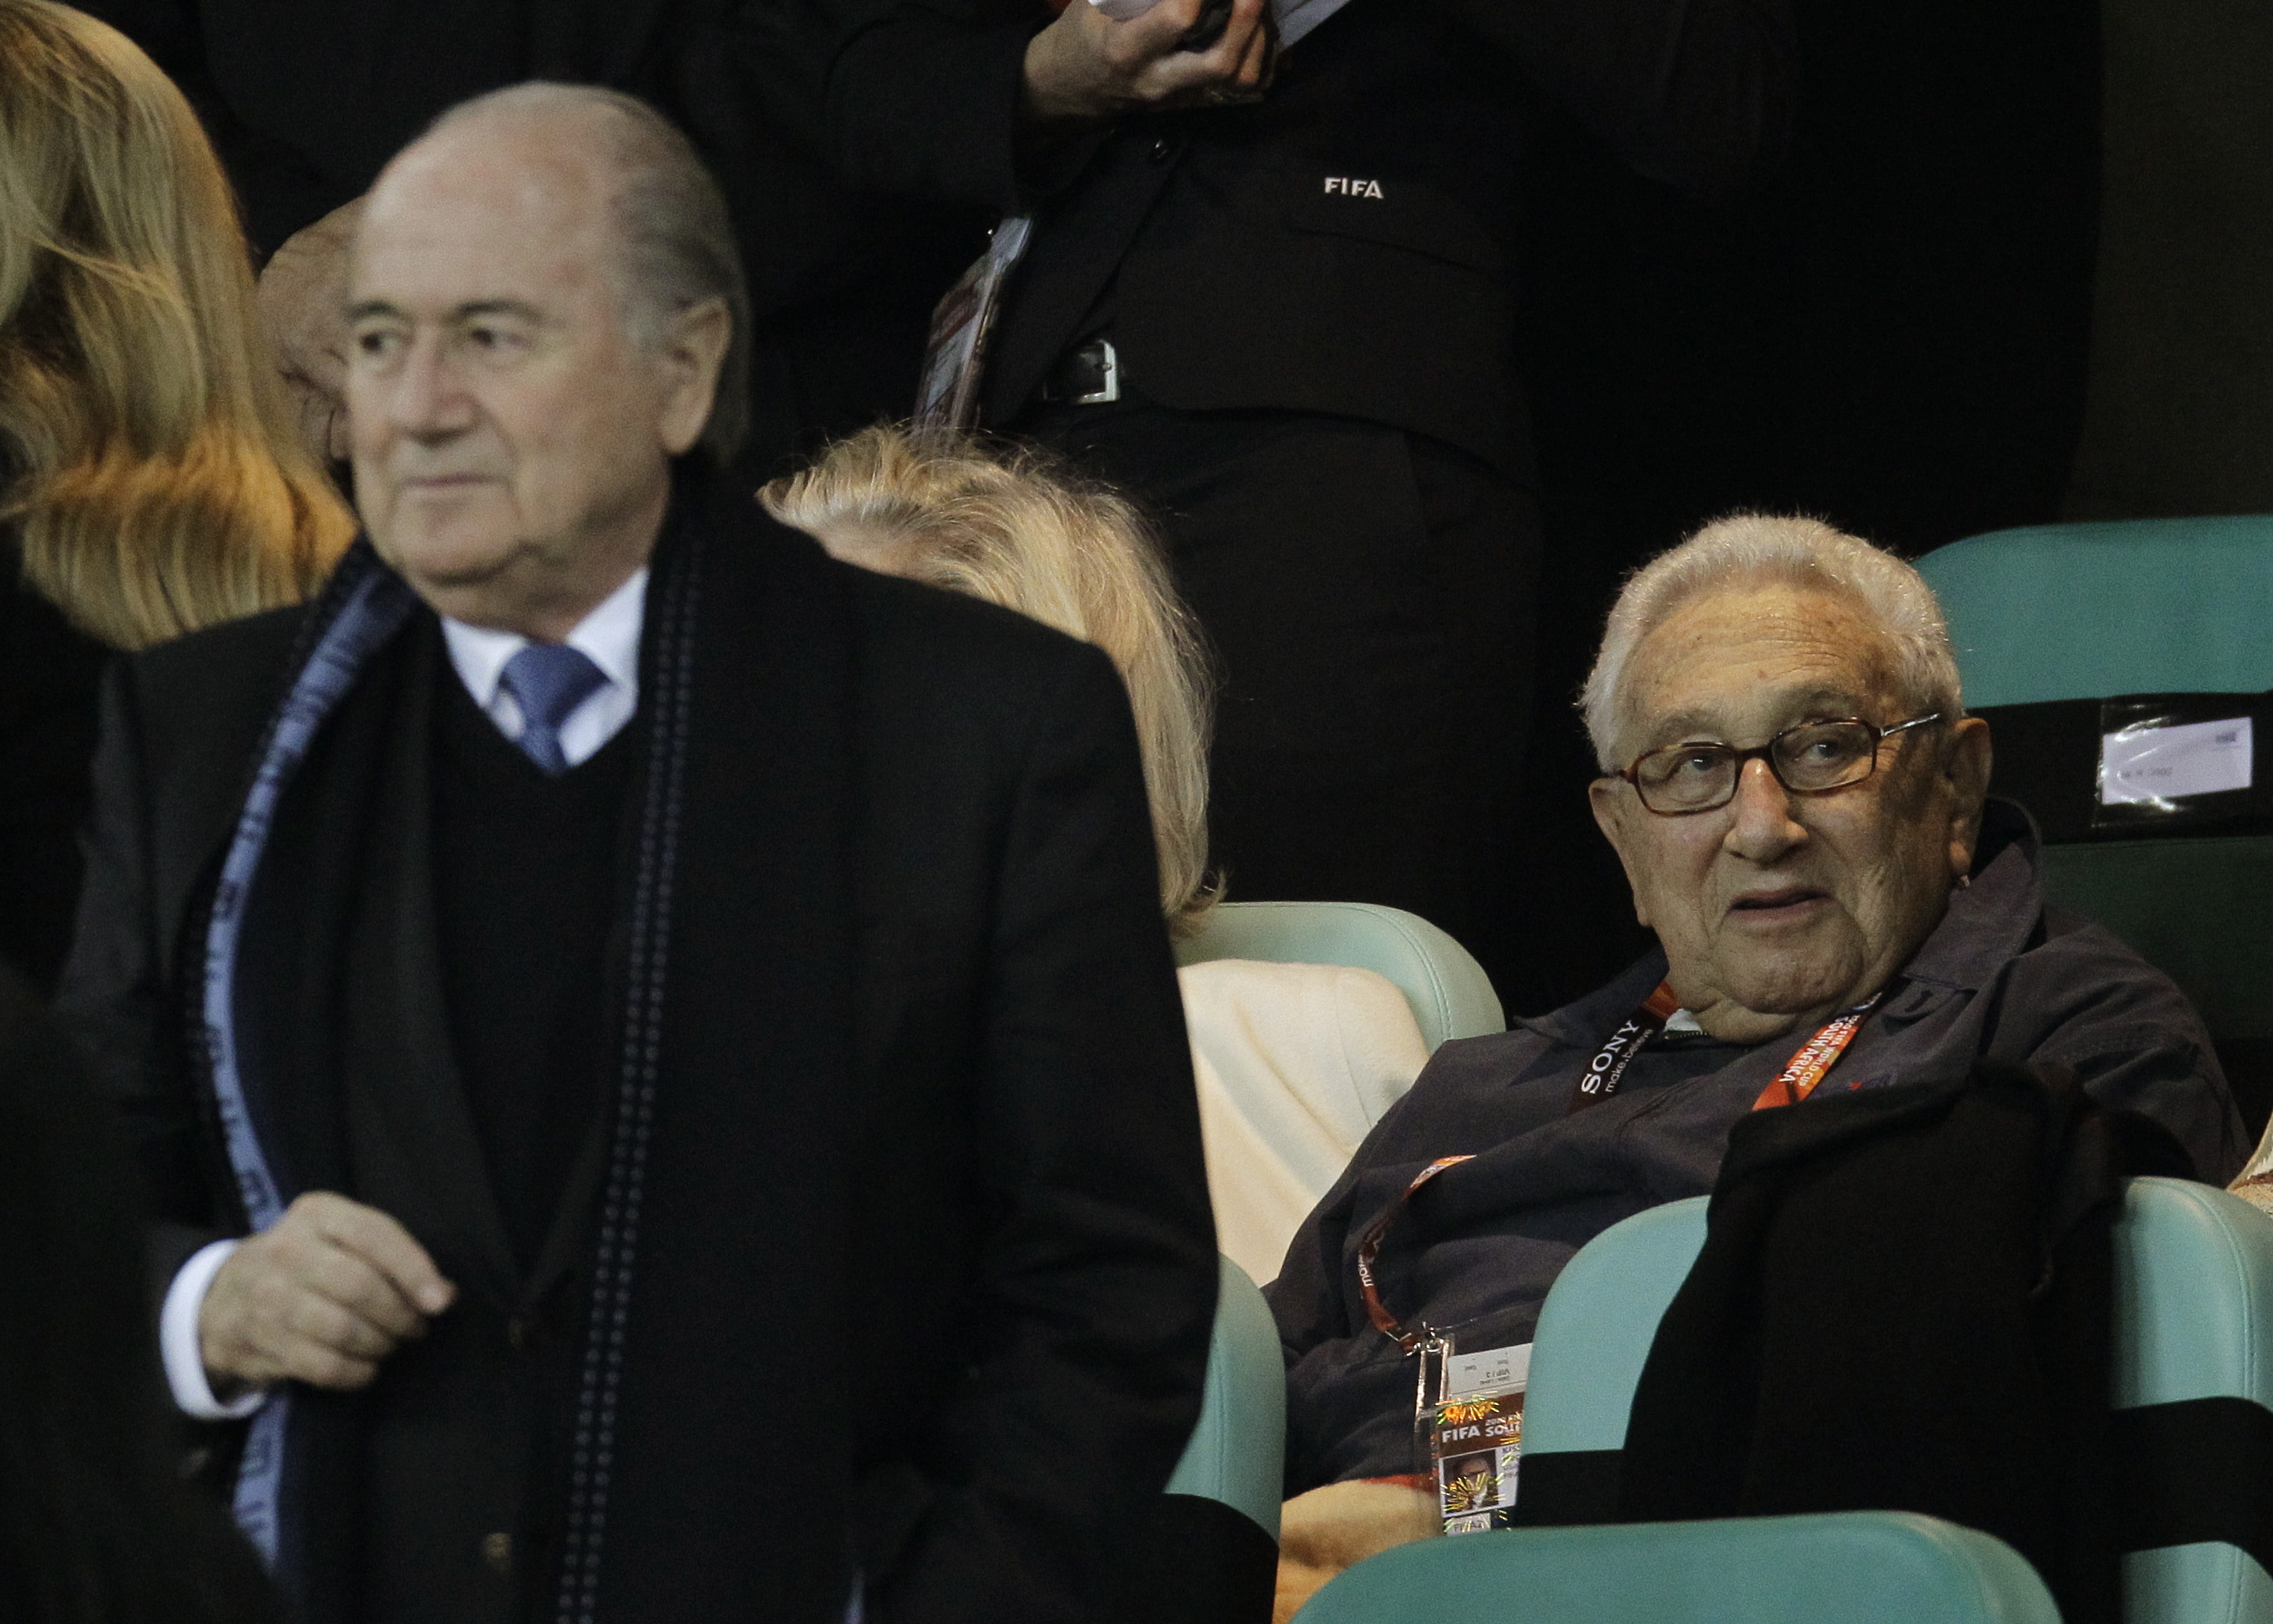 Krig, Sepp Blatter, fifa, Henry Kissinger